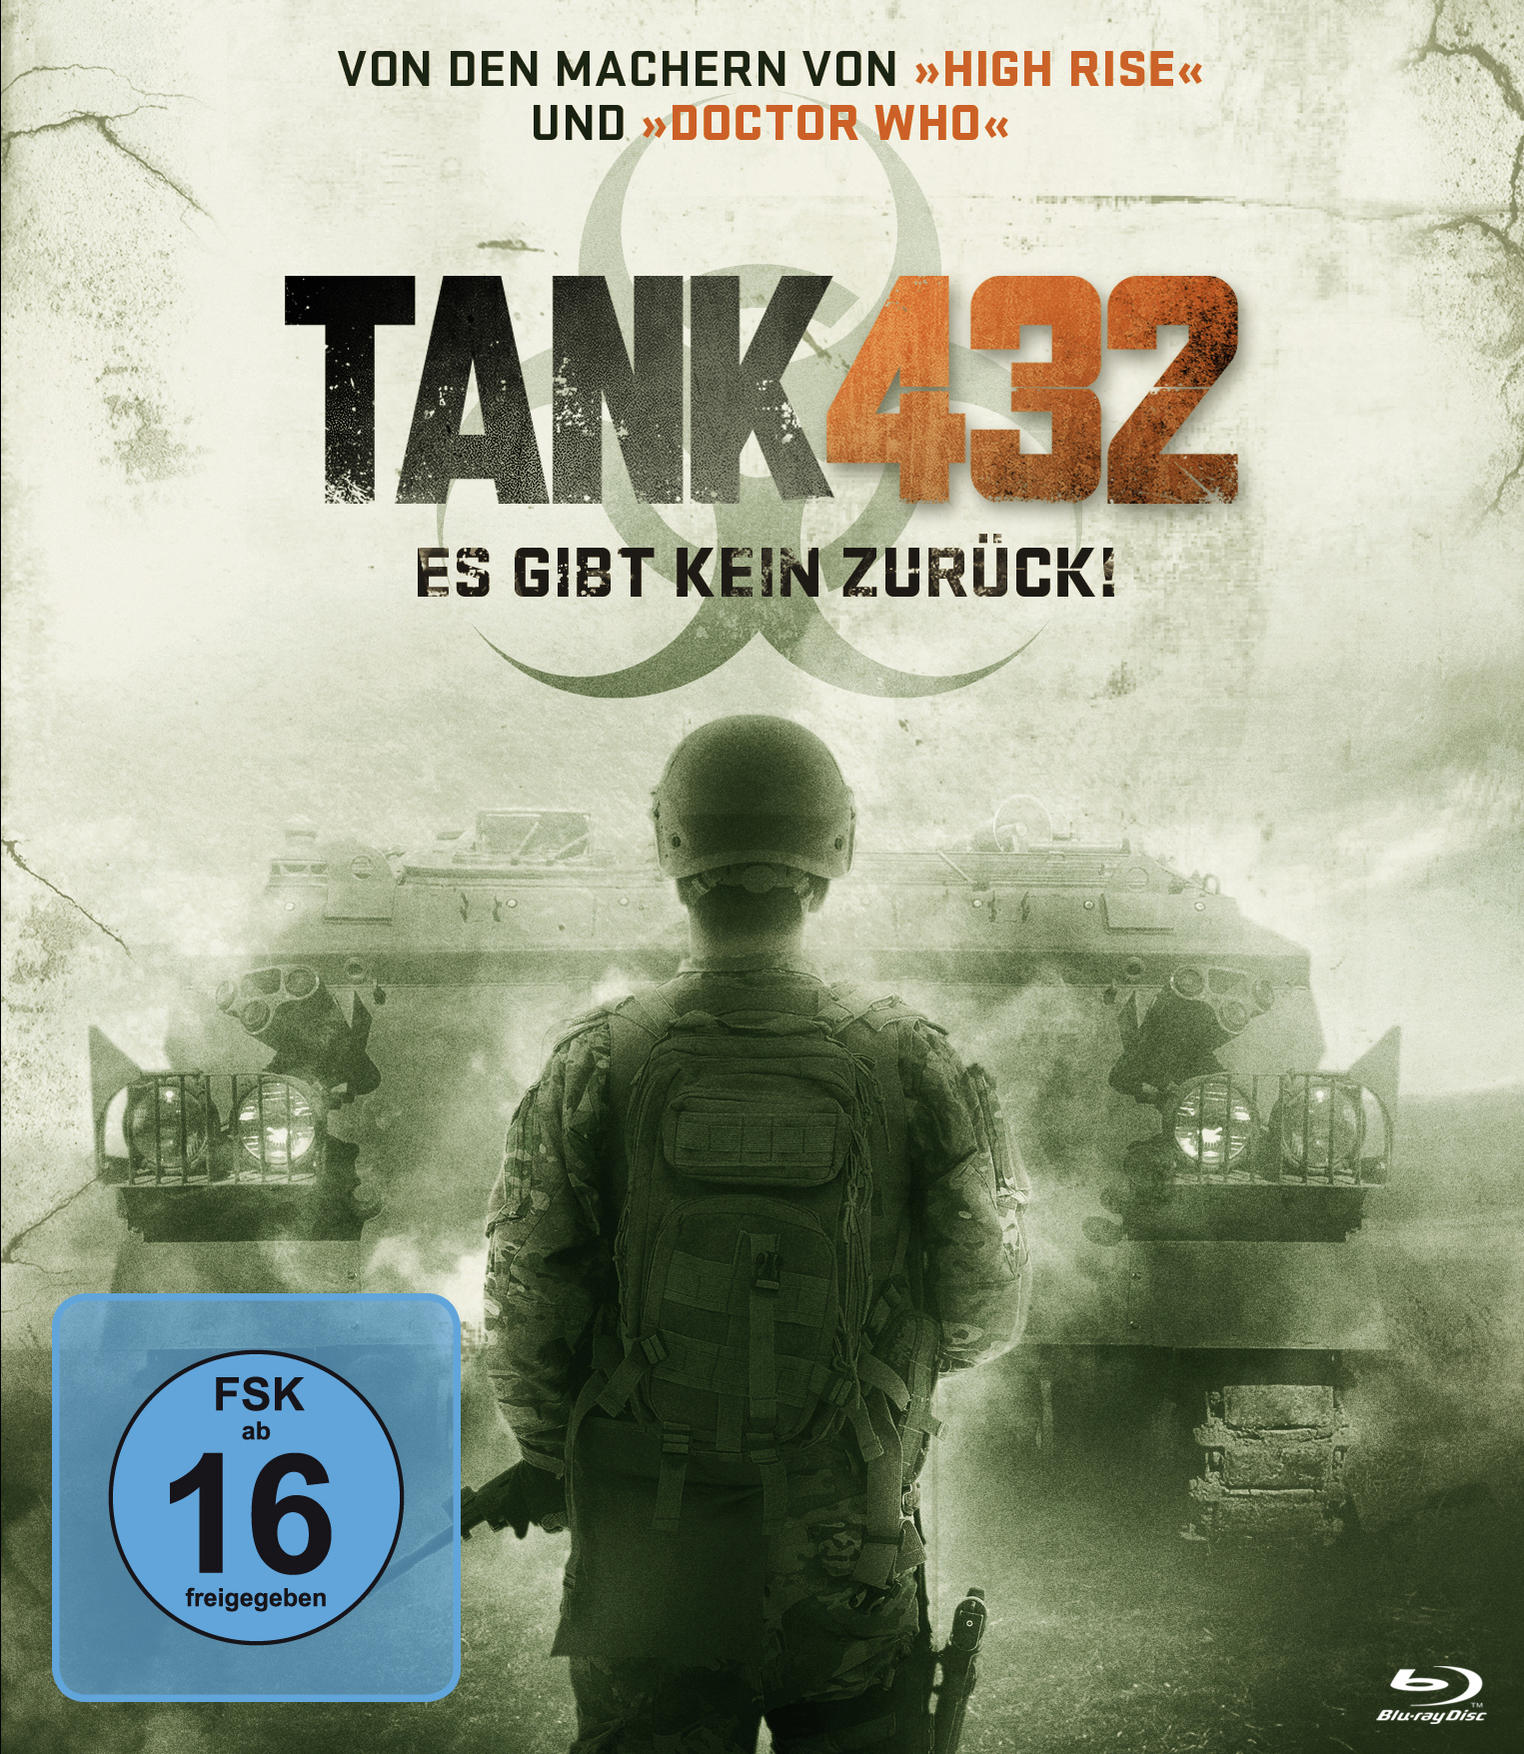 Tank 432 es zurück - DVD gibt kein